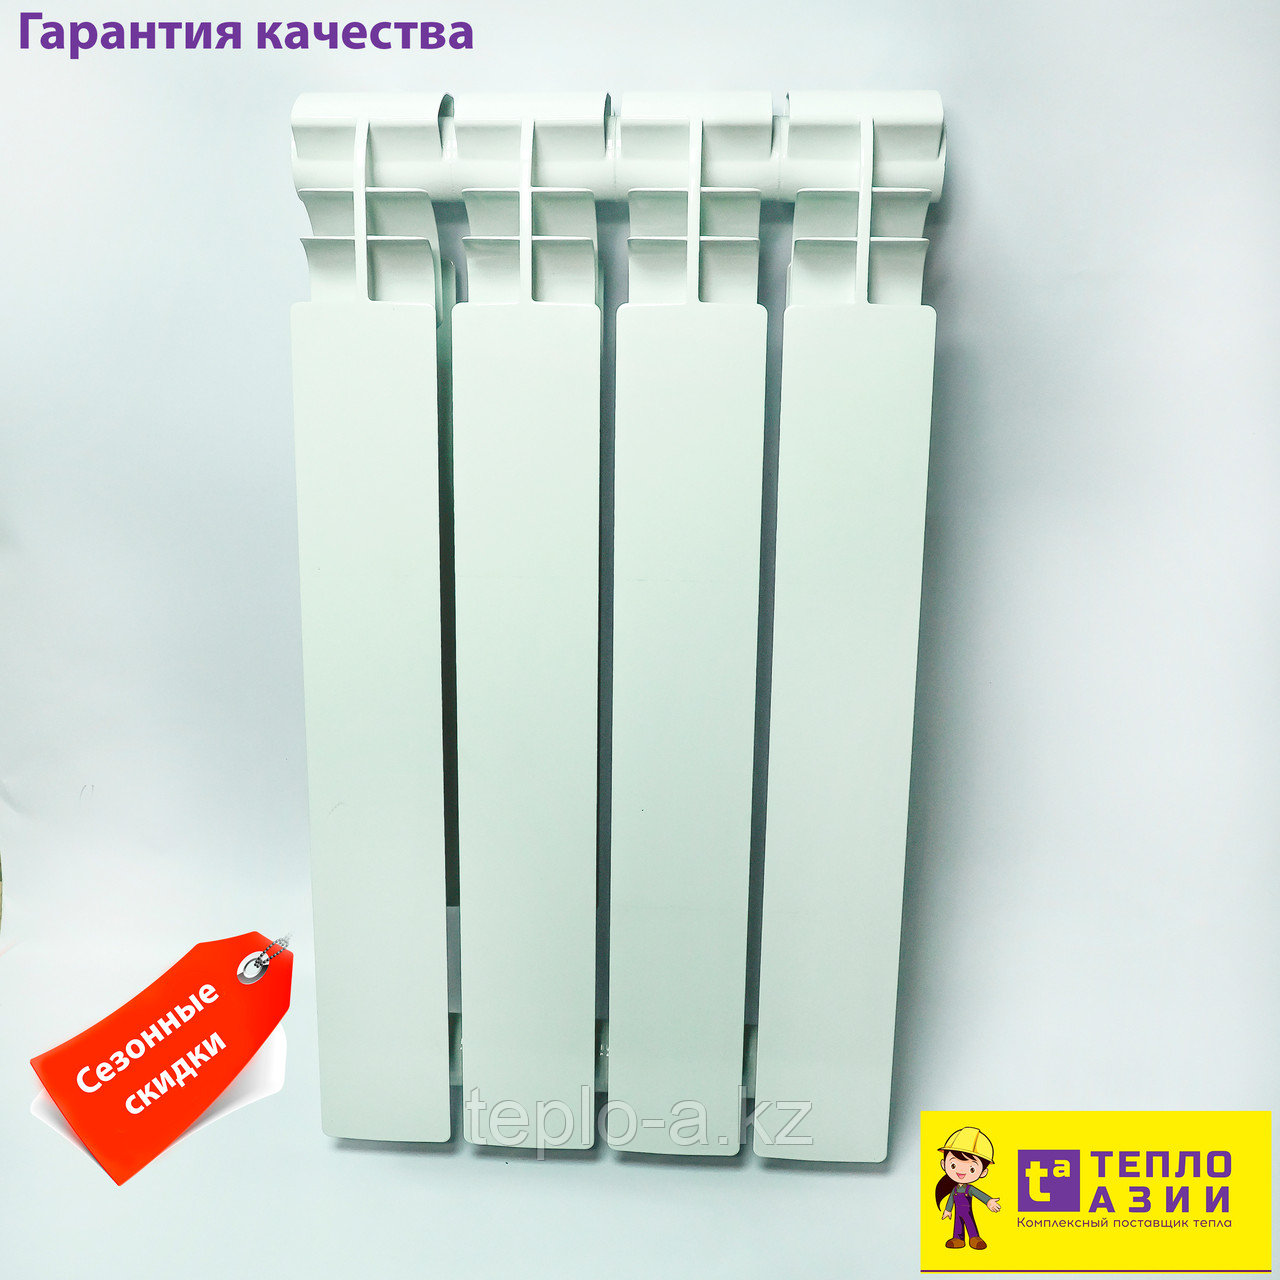 Радиатор биметаллический HALSEN 500/100 РОССИЯ